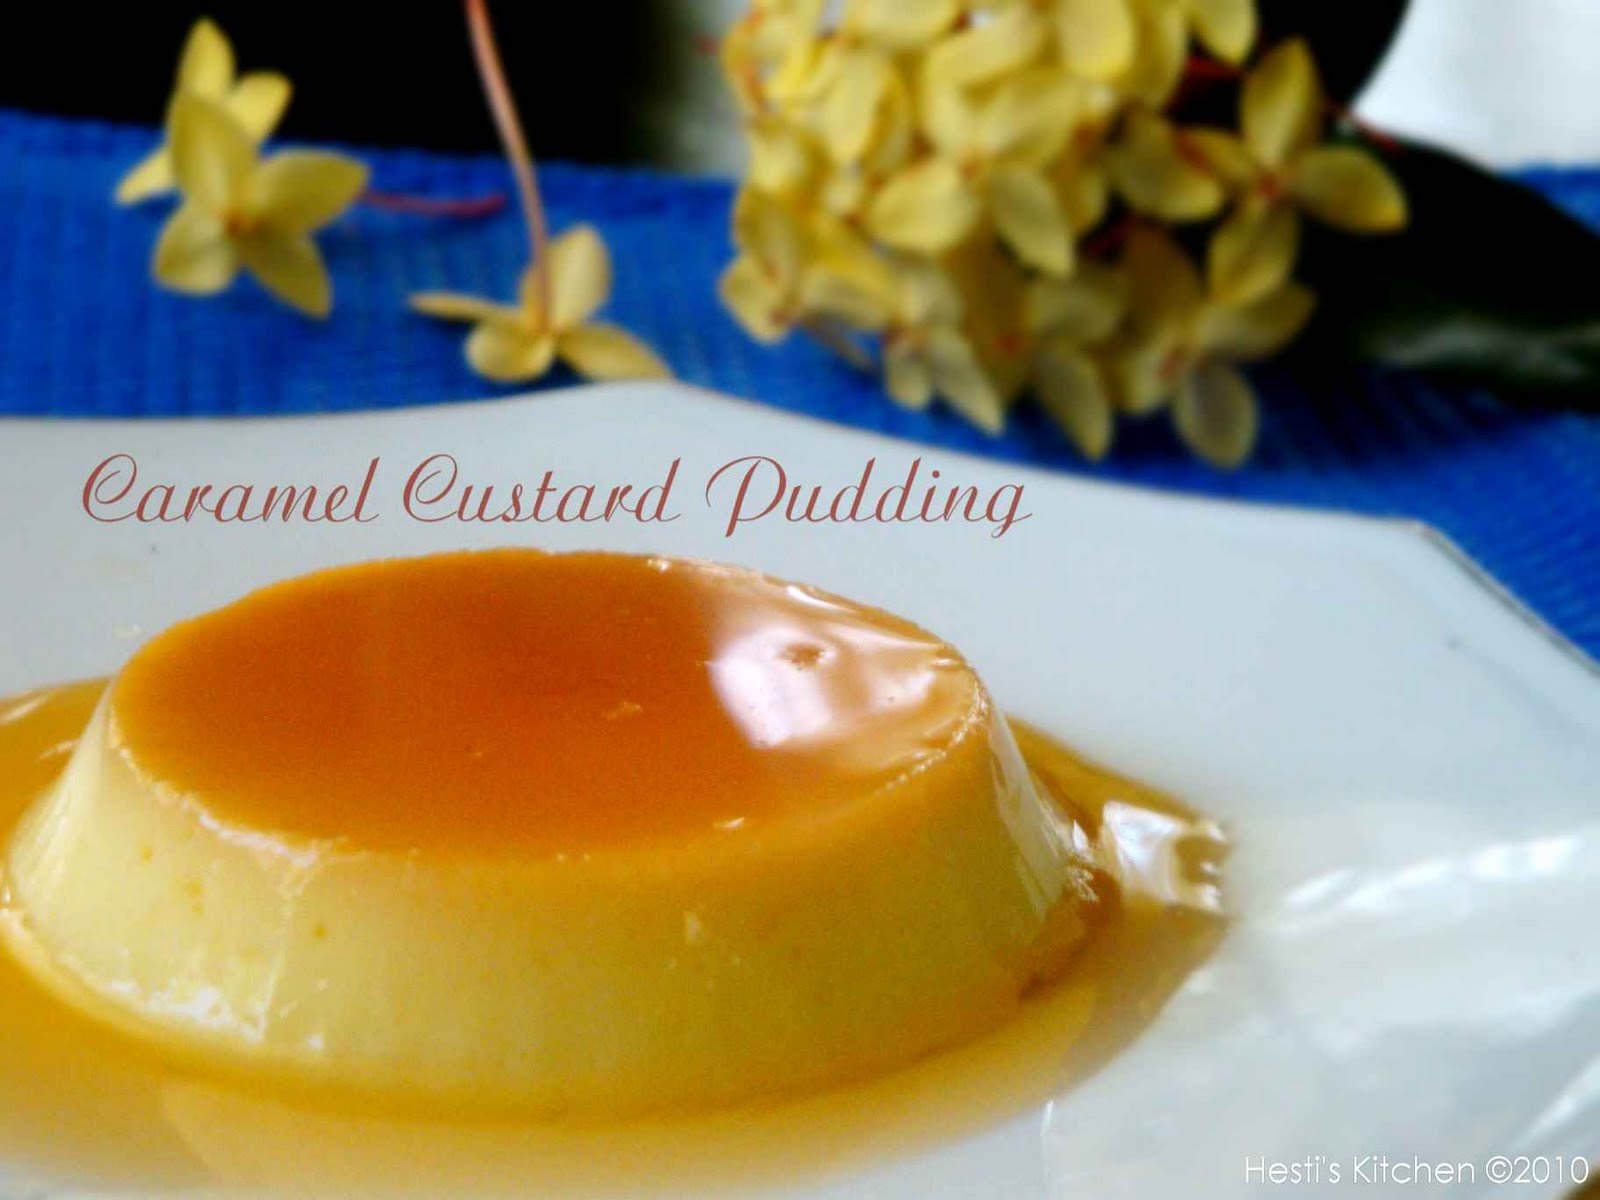 HESTI'S KITCHEN : yummy for your tummy: Caramel Custard 